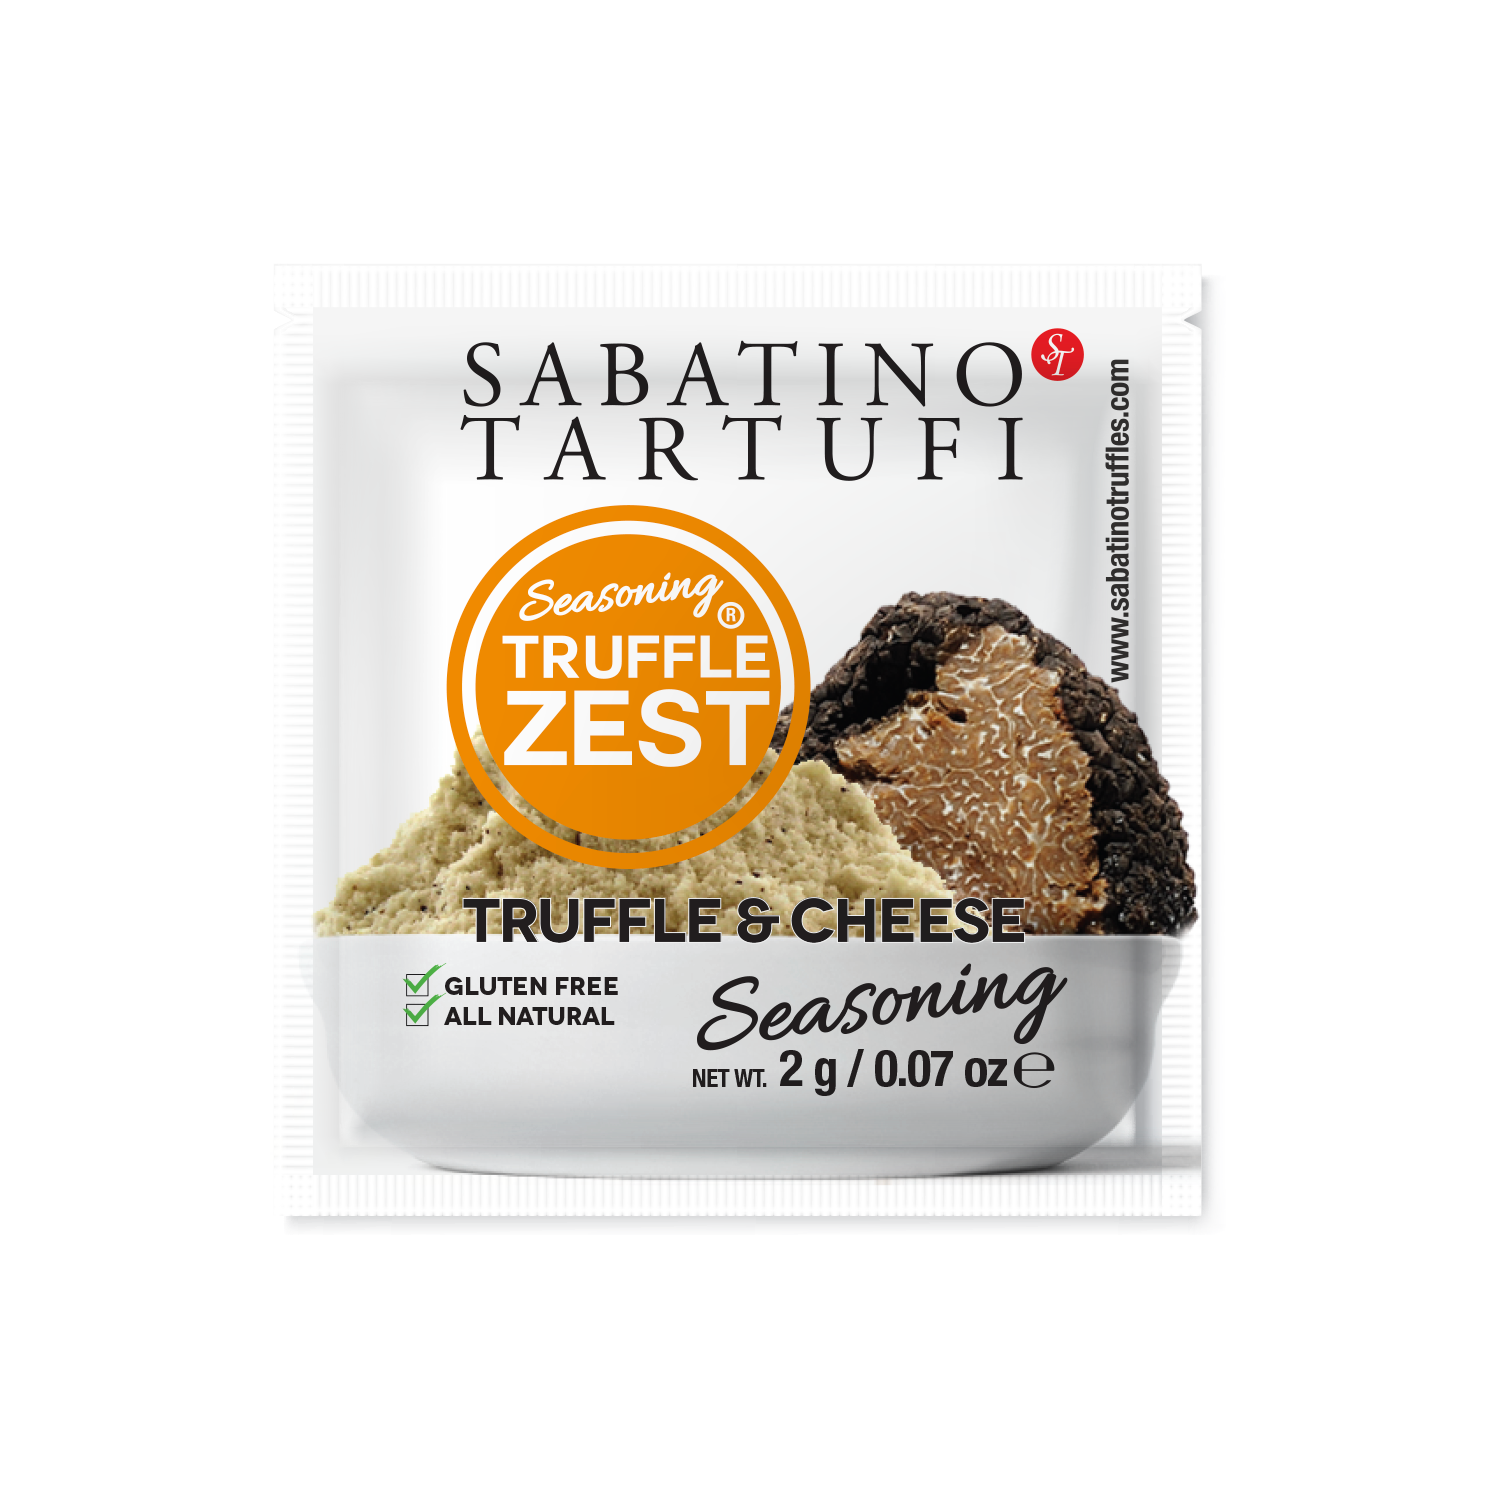 Truffle Zest & Cheese Seasoning- 2g each, 10 packets - Sabatino Truffles